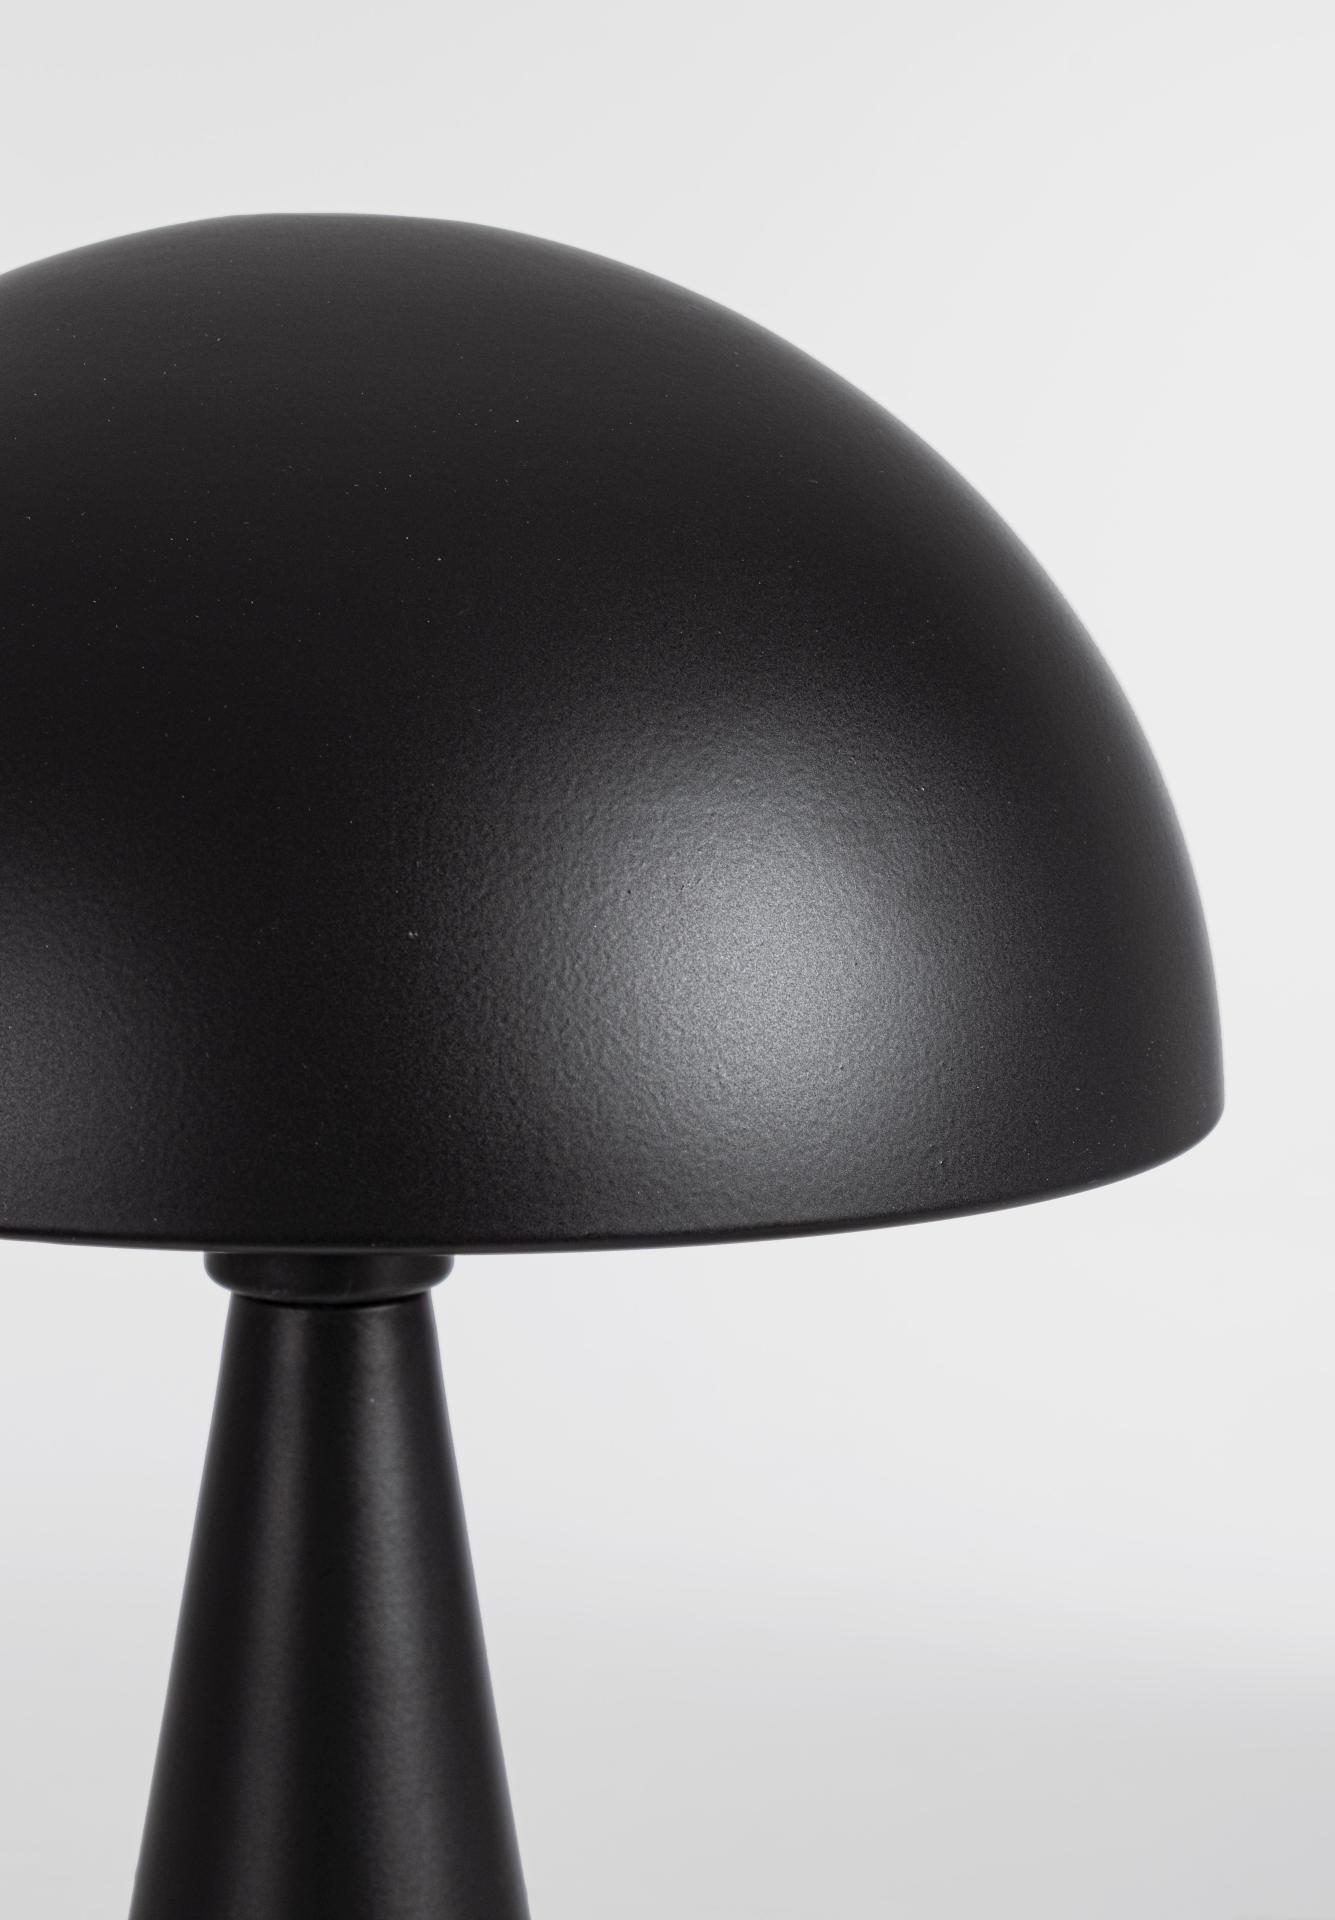 Die Tischleuchte Modern überzeugt mit ihrem modernen Design. Gefertigt wurde sie aus Metall, welches einen schwarzen Farbton besitzt. Der Lampenschirm ist auch aus Metall. Die Lampe besitzt eine Höhe von 36,5 cm.